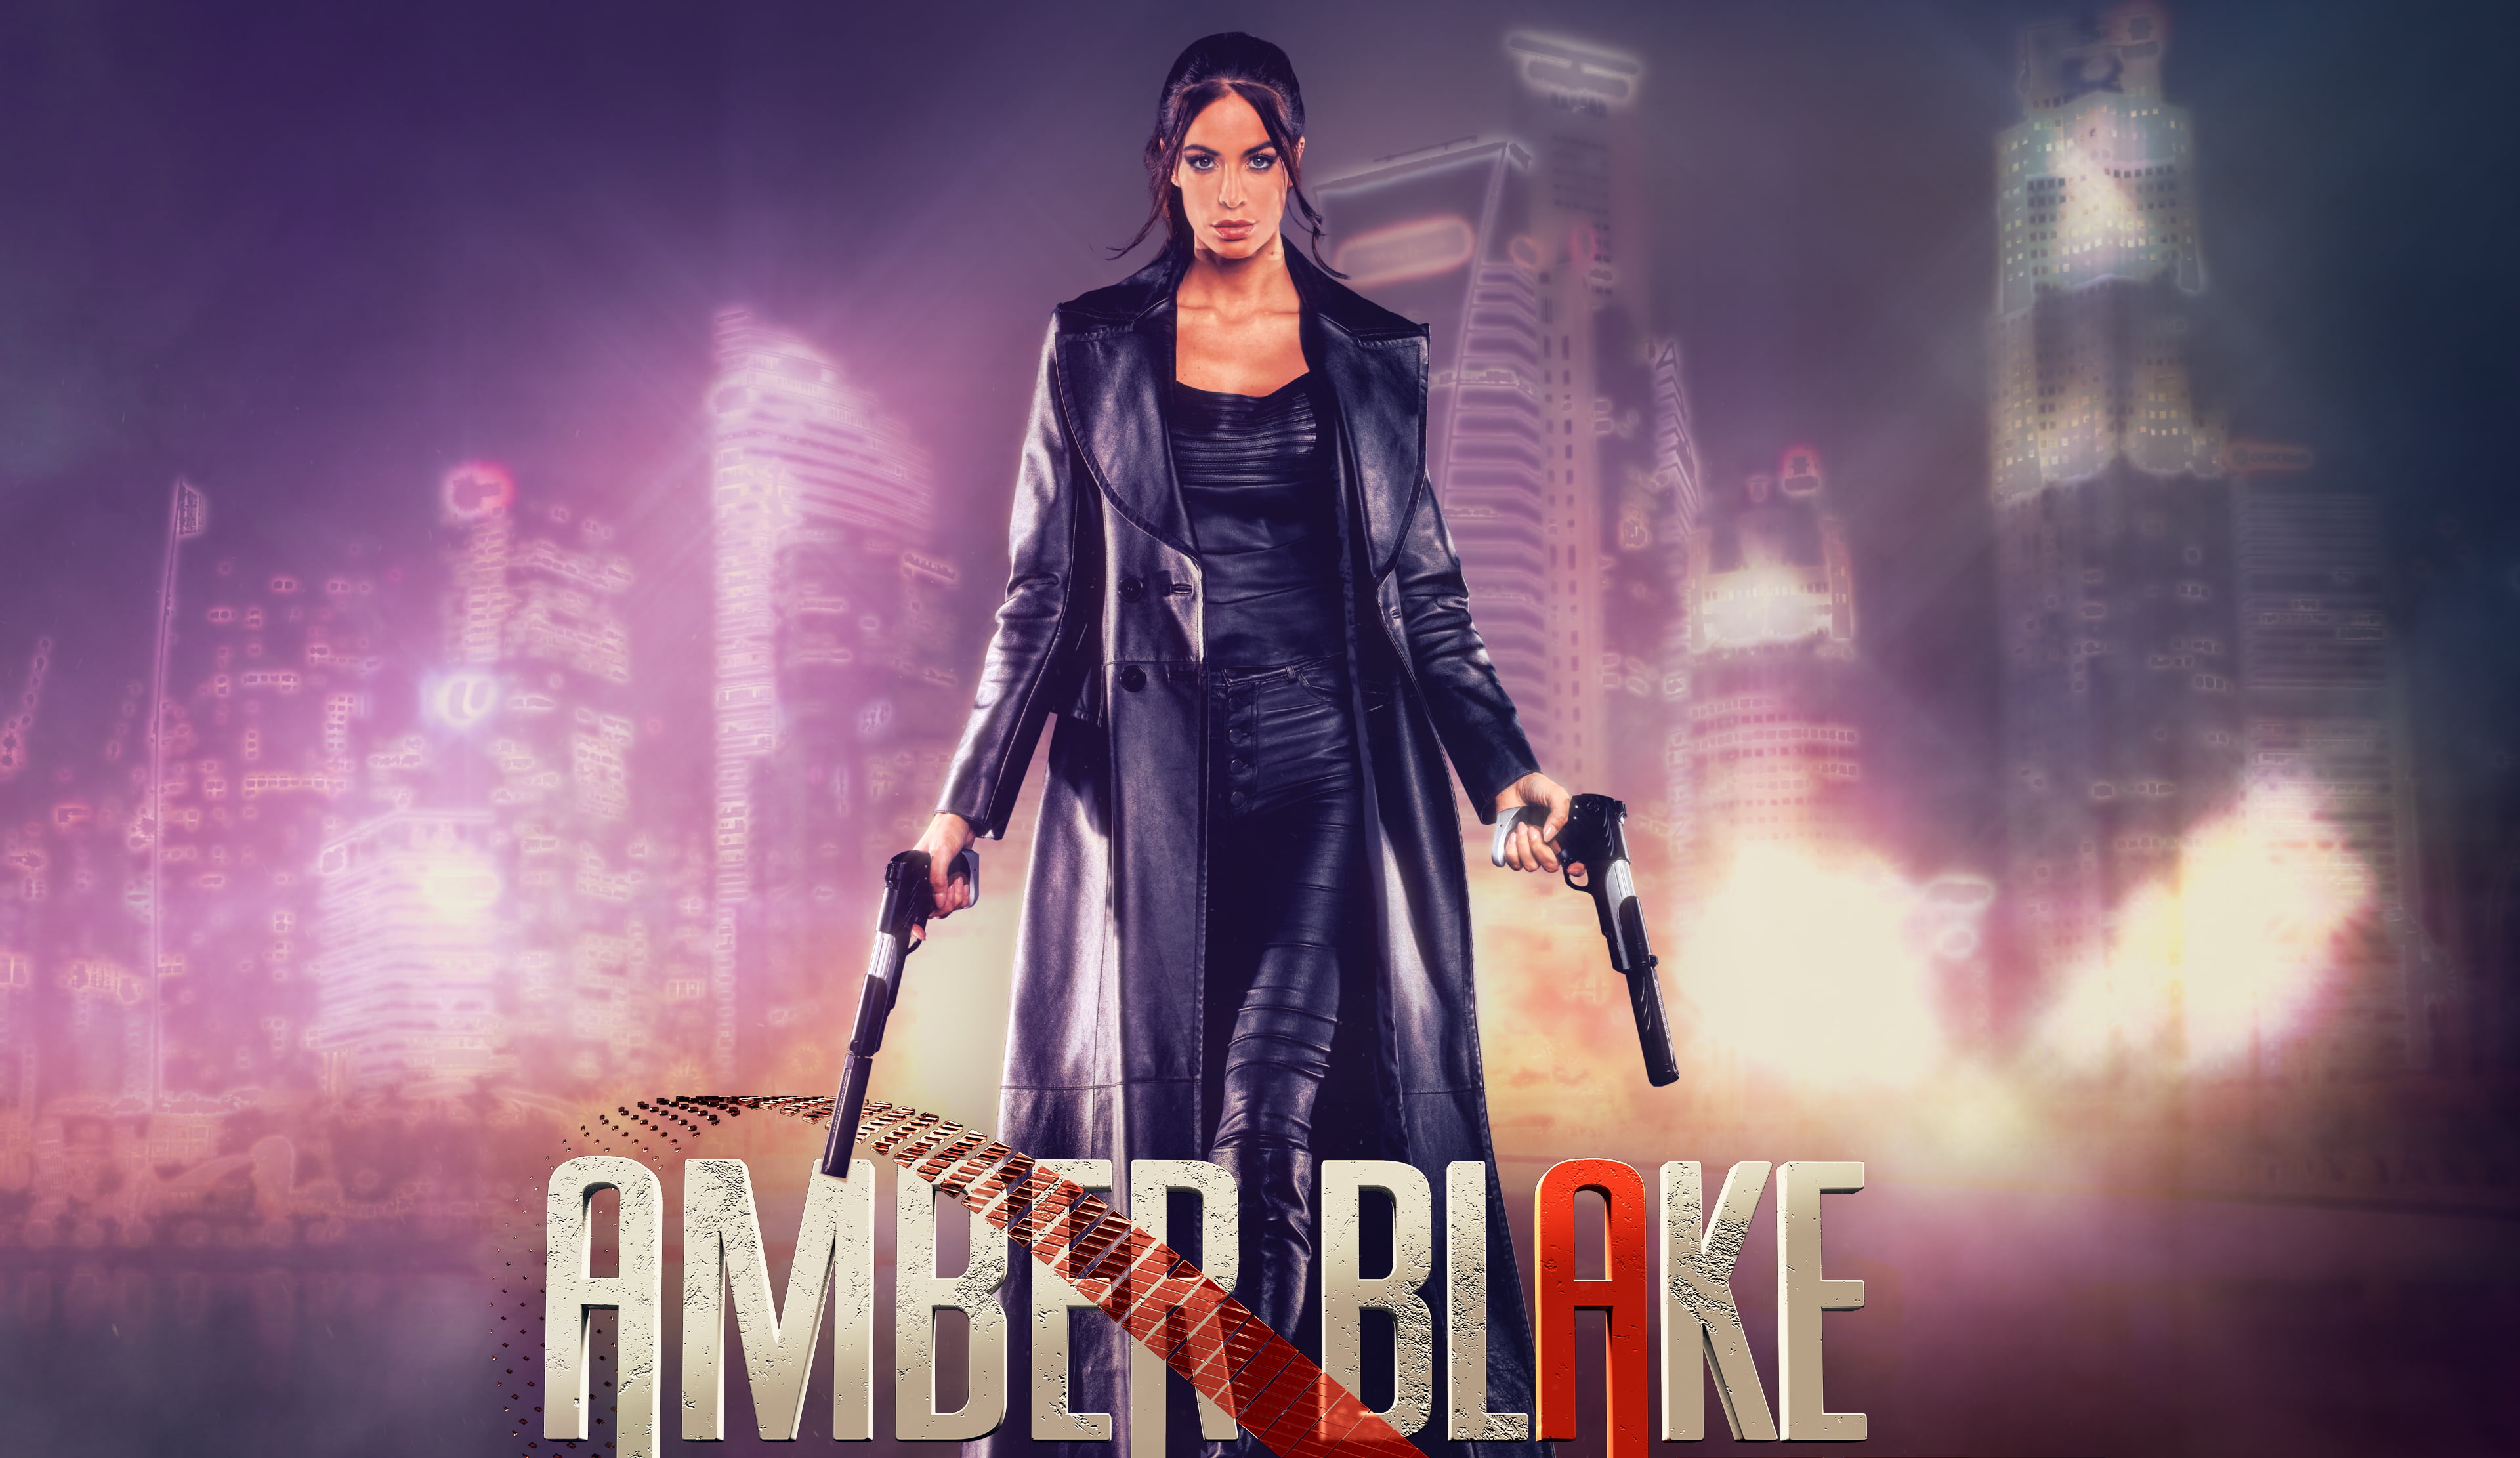 Amber Blake VR: Neue VR-Erfahrung im Europa-Park angekündigt